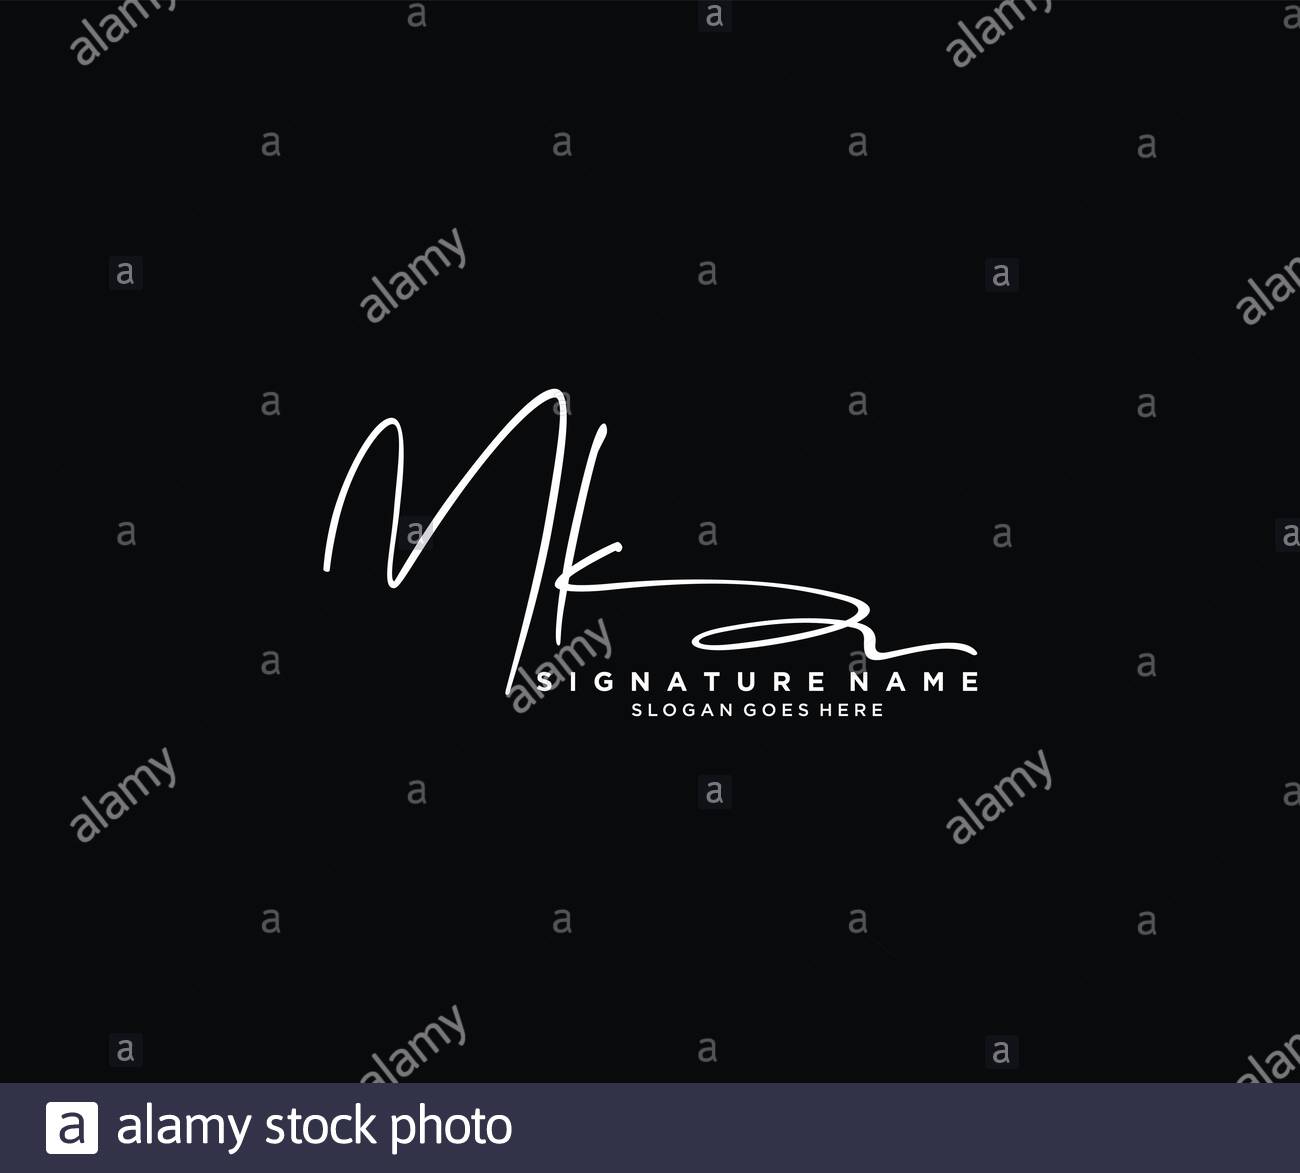 mk signature